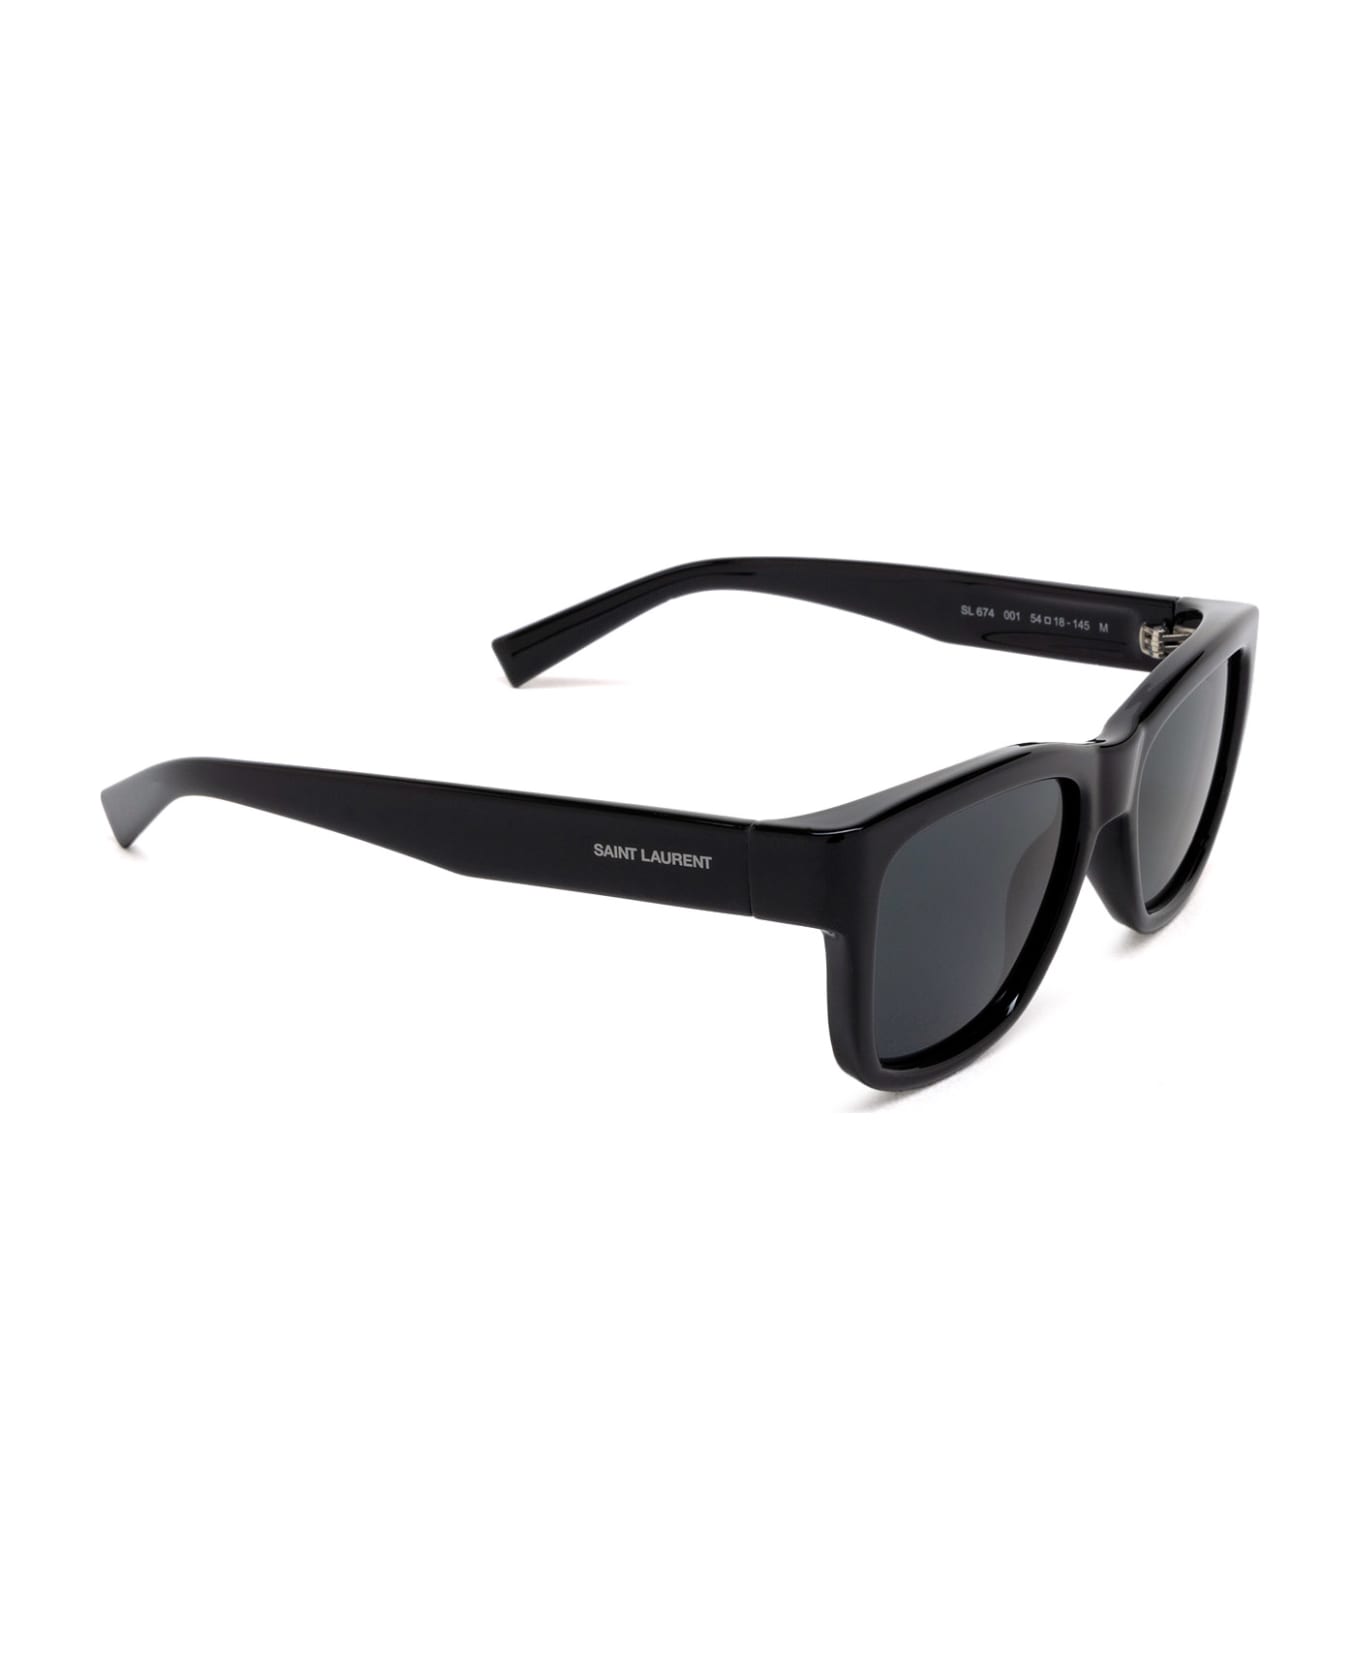 Saint Laurent Eyewear Sl 674 Black Sunglasses - Black